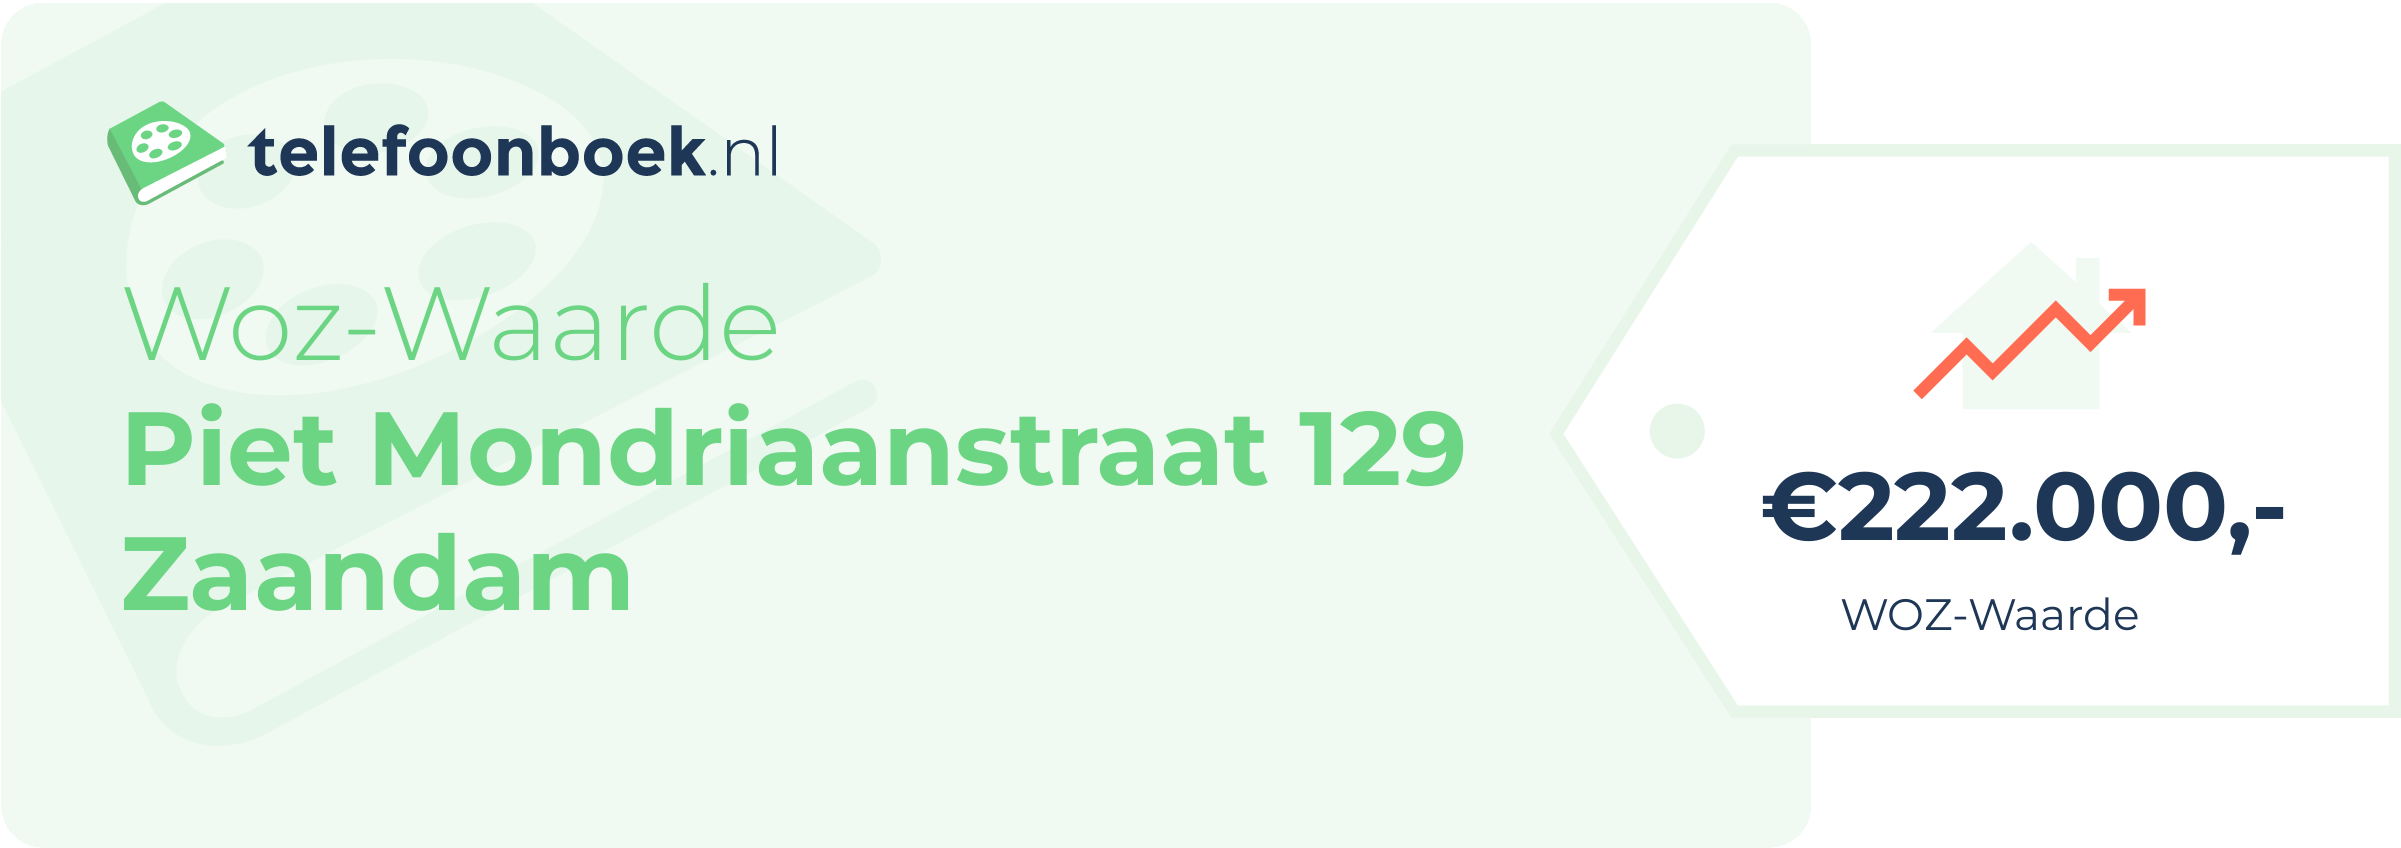 WOZ-waarde Piet Mondriaanstraat 129 Zaandam